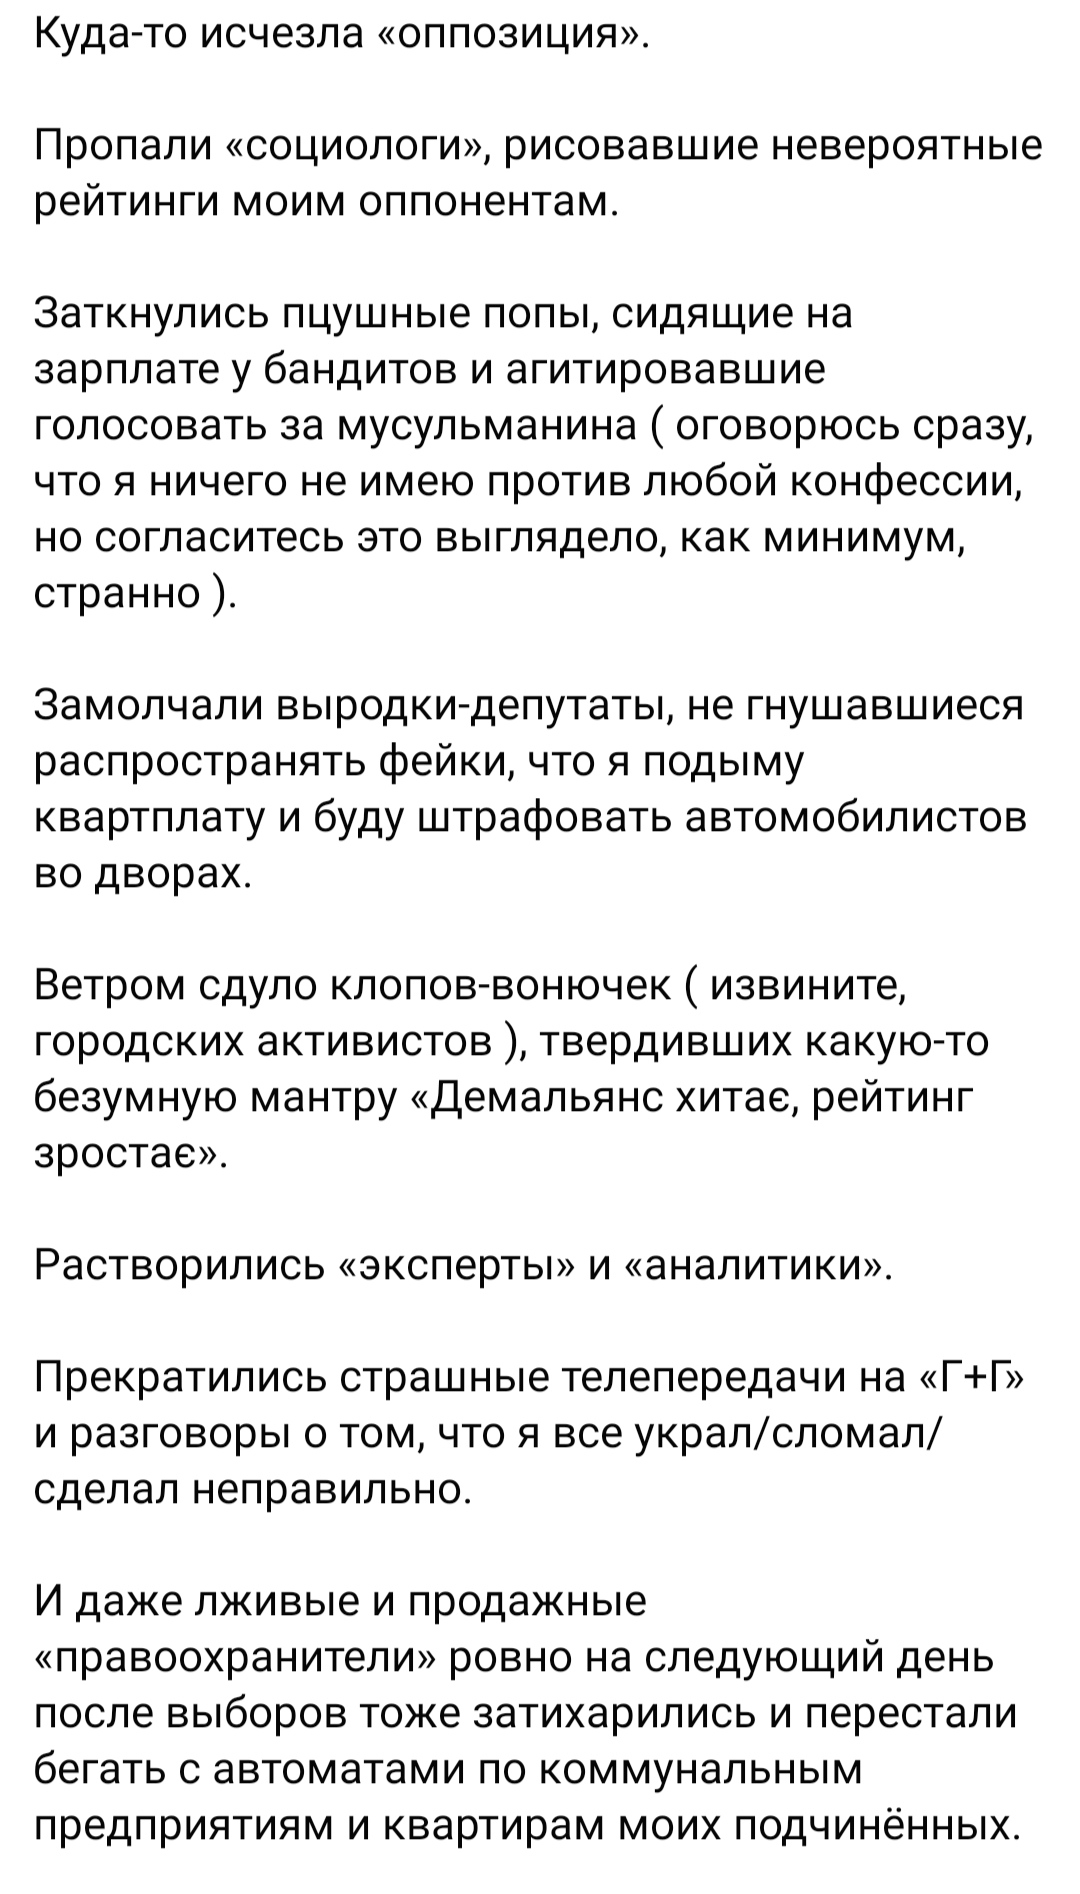 Борис Филатов. Новости Днепра